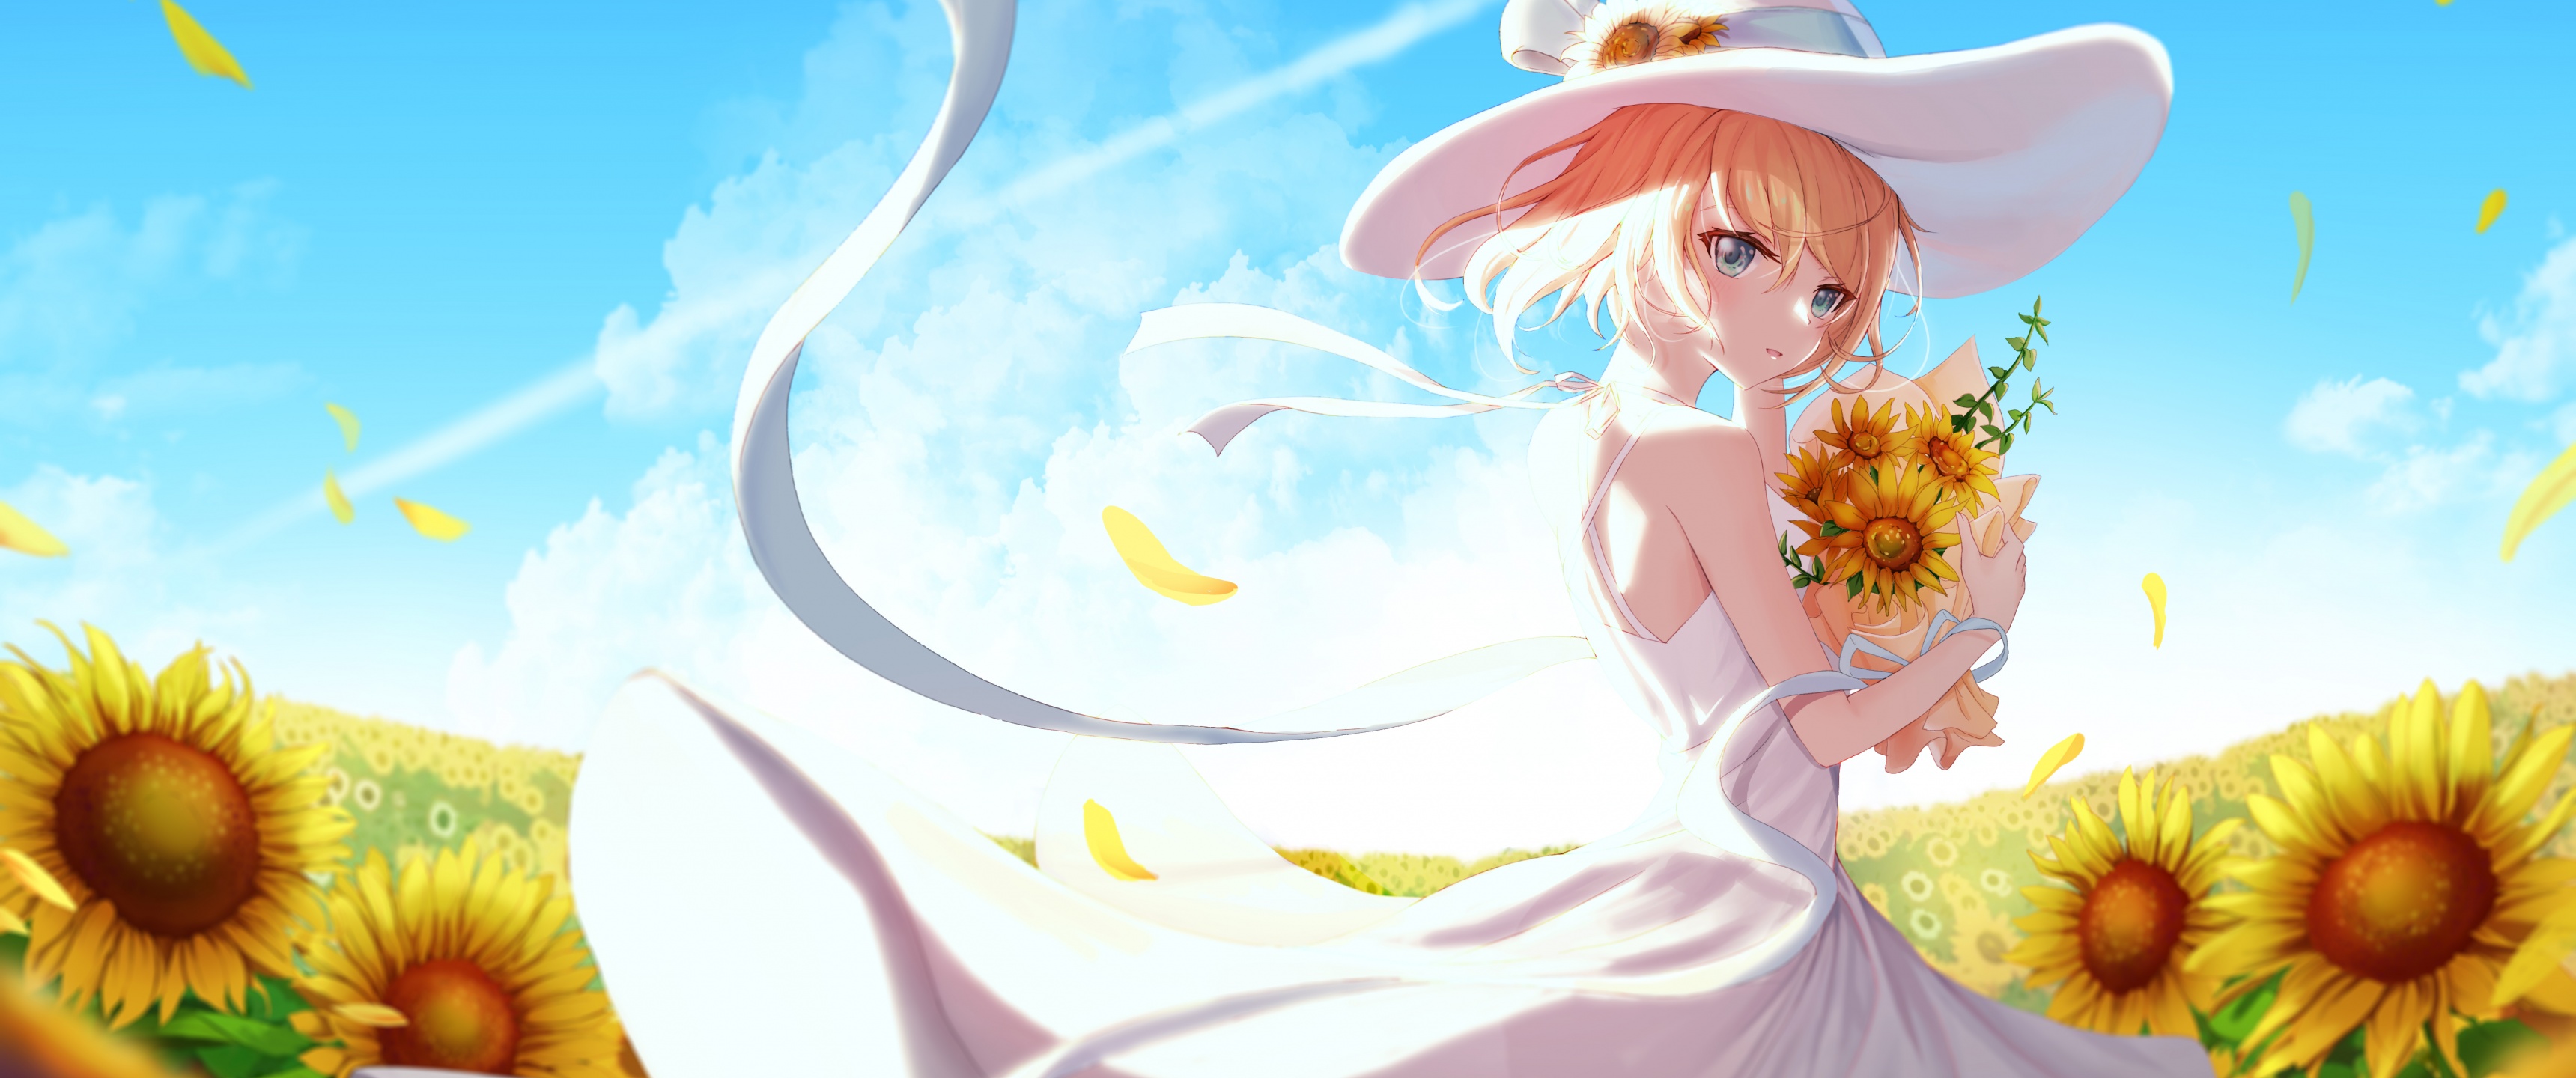 Anime girl Wallpaper 4K, Sunflowers, Sunny day, Fantasy